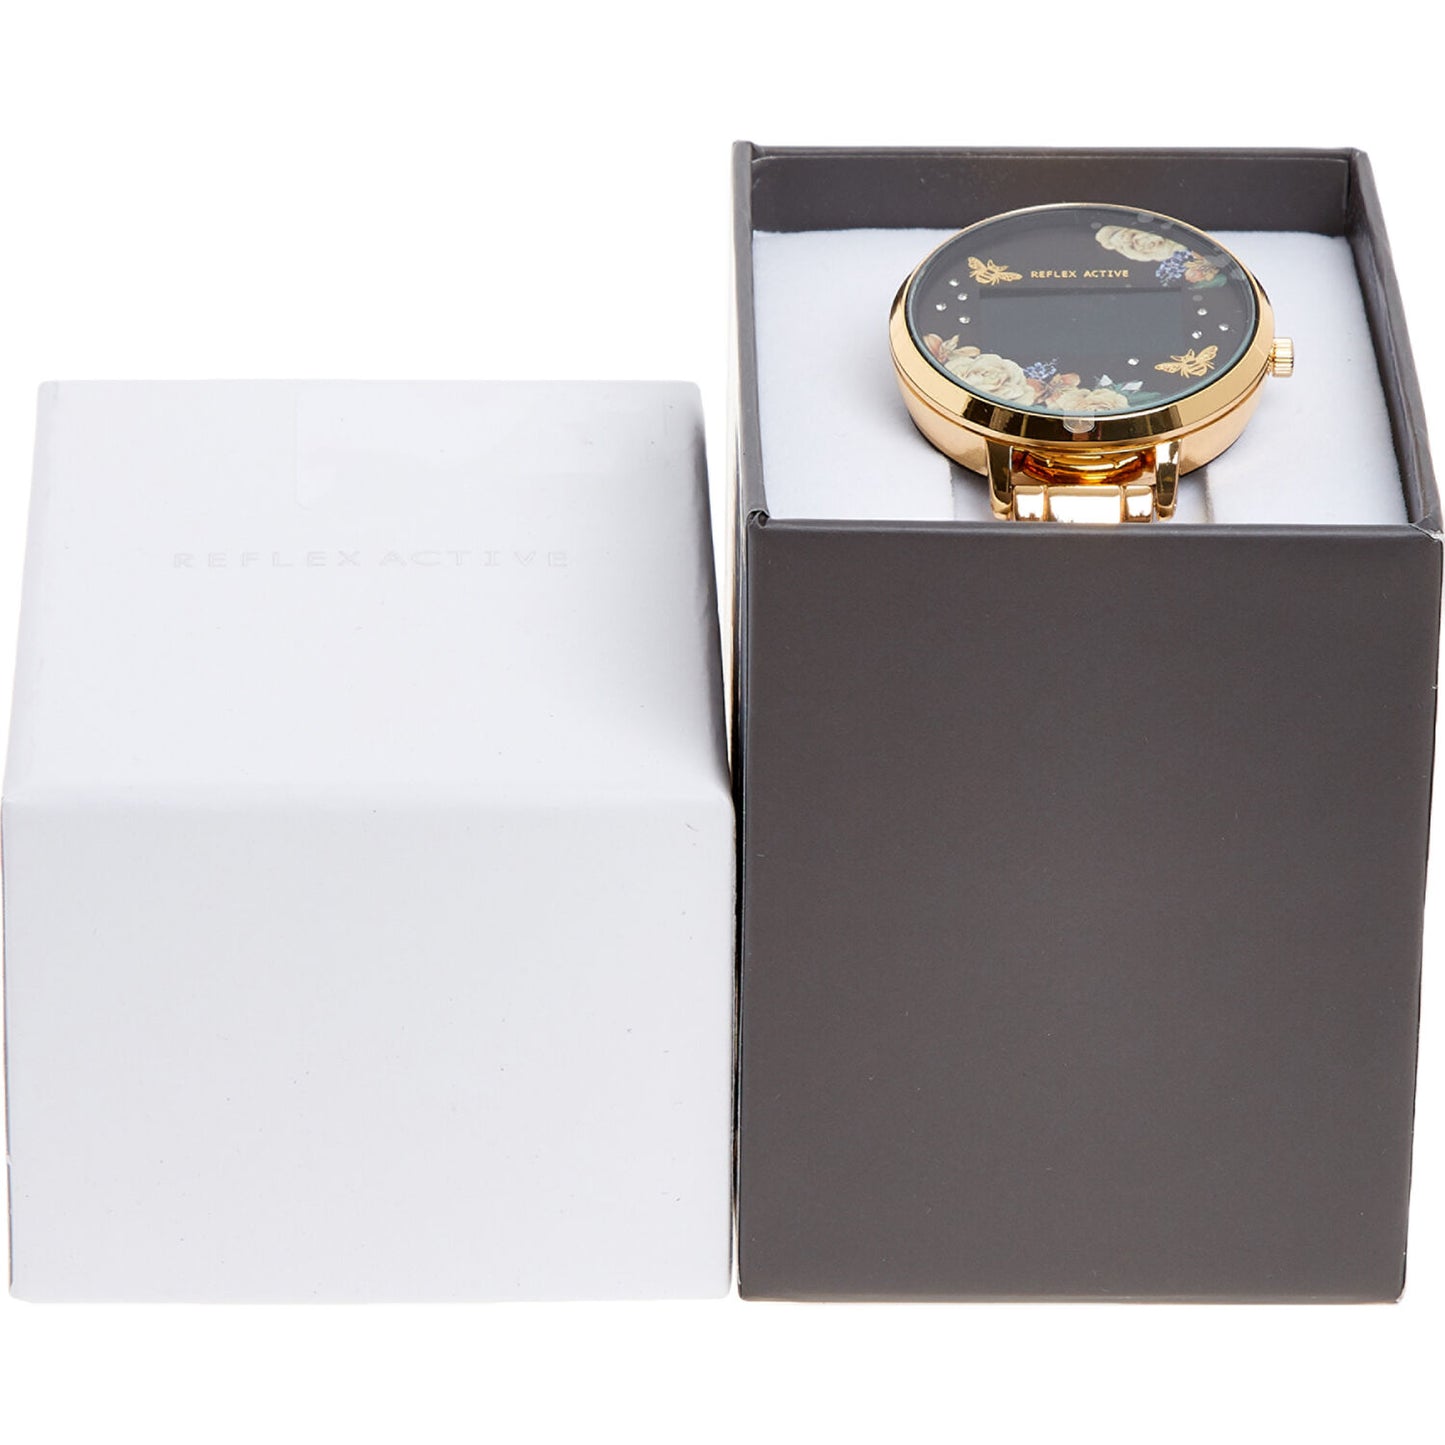 REFLEX Gold Tone Digital Watch